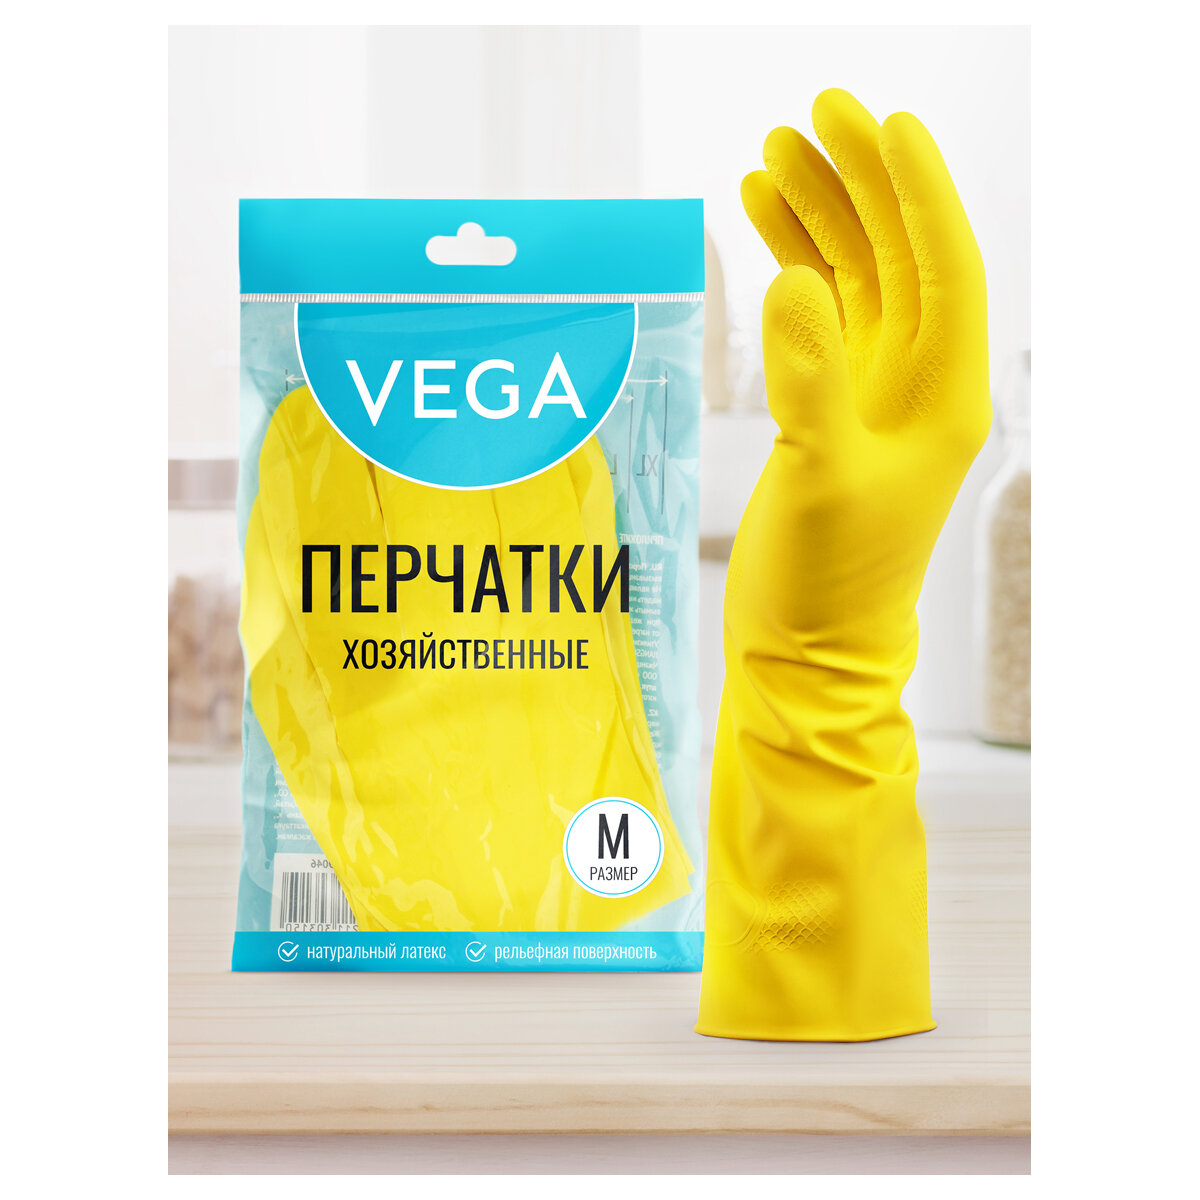 Перчатки резиновые хозяйственные Vega, многоразовые, хлопчатобумажное напыление, р. M, желтые, пакет с европодвесом, 5 штук